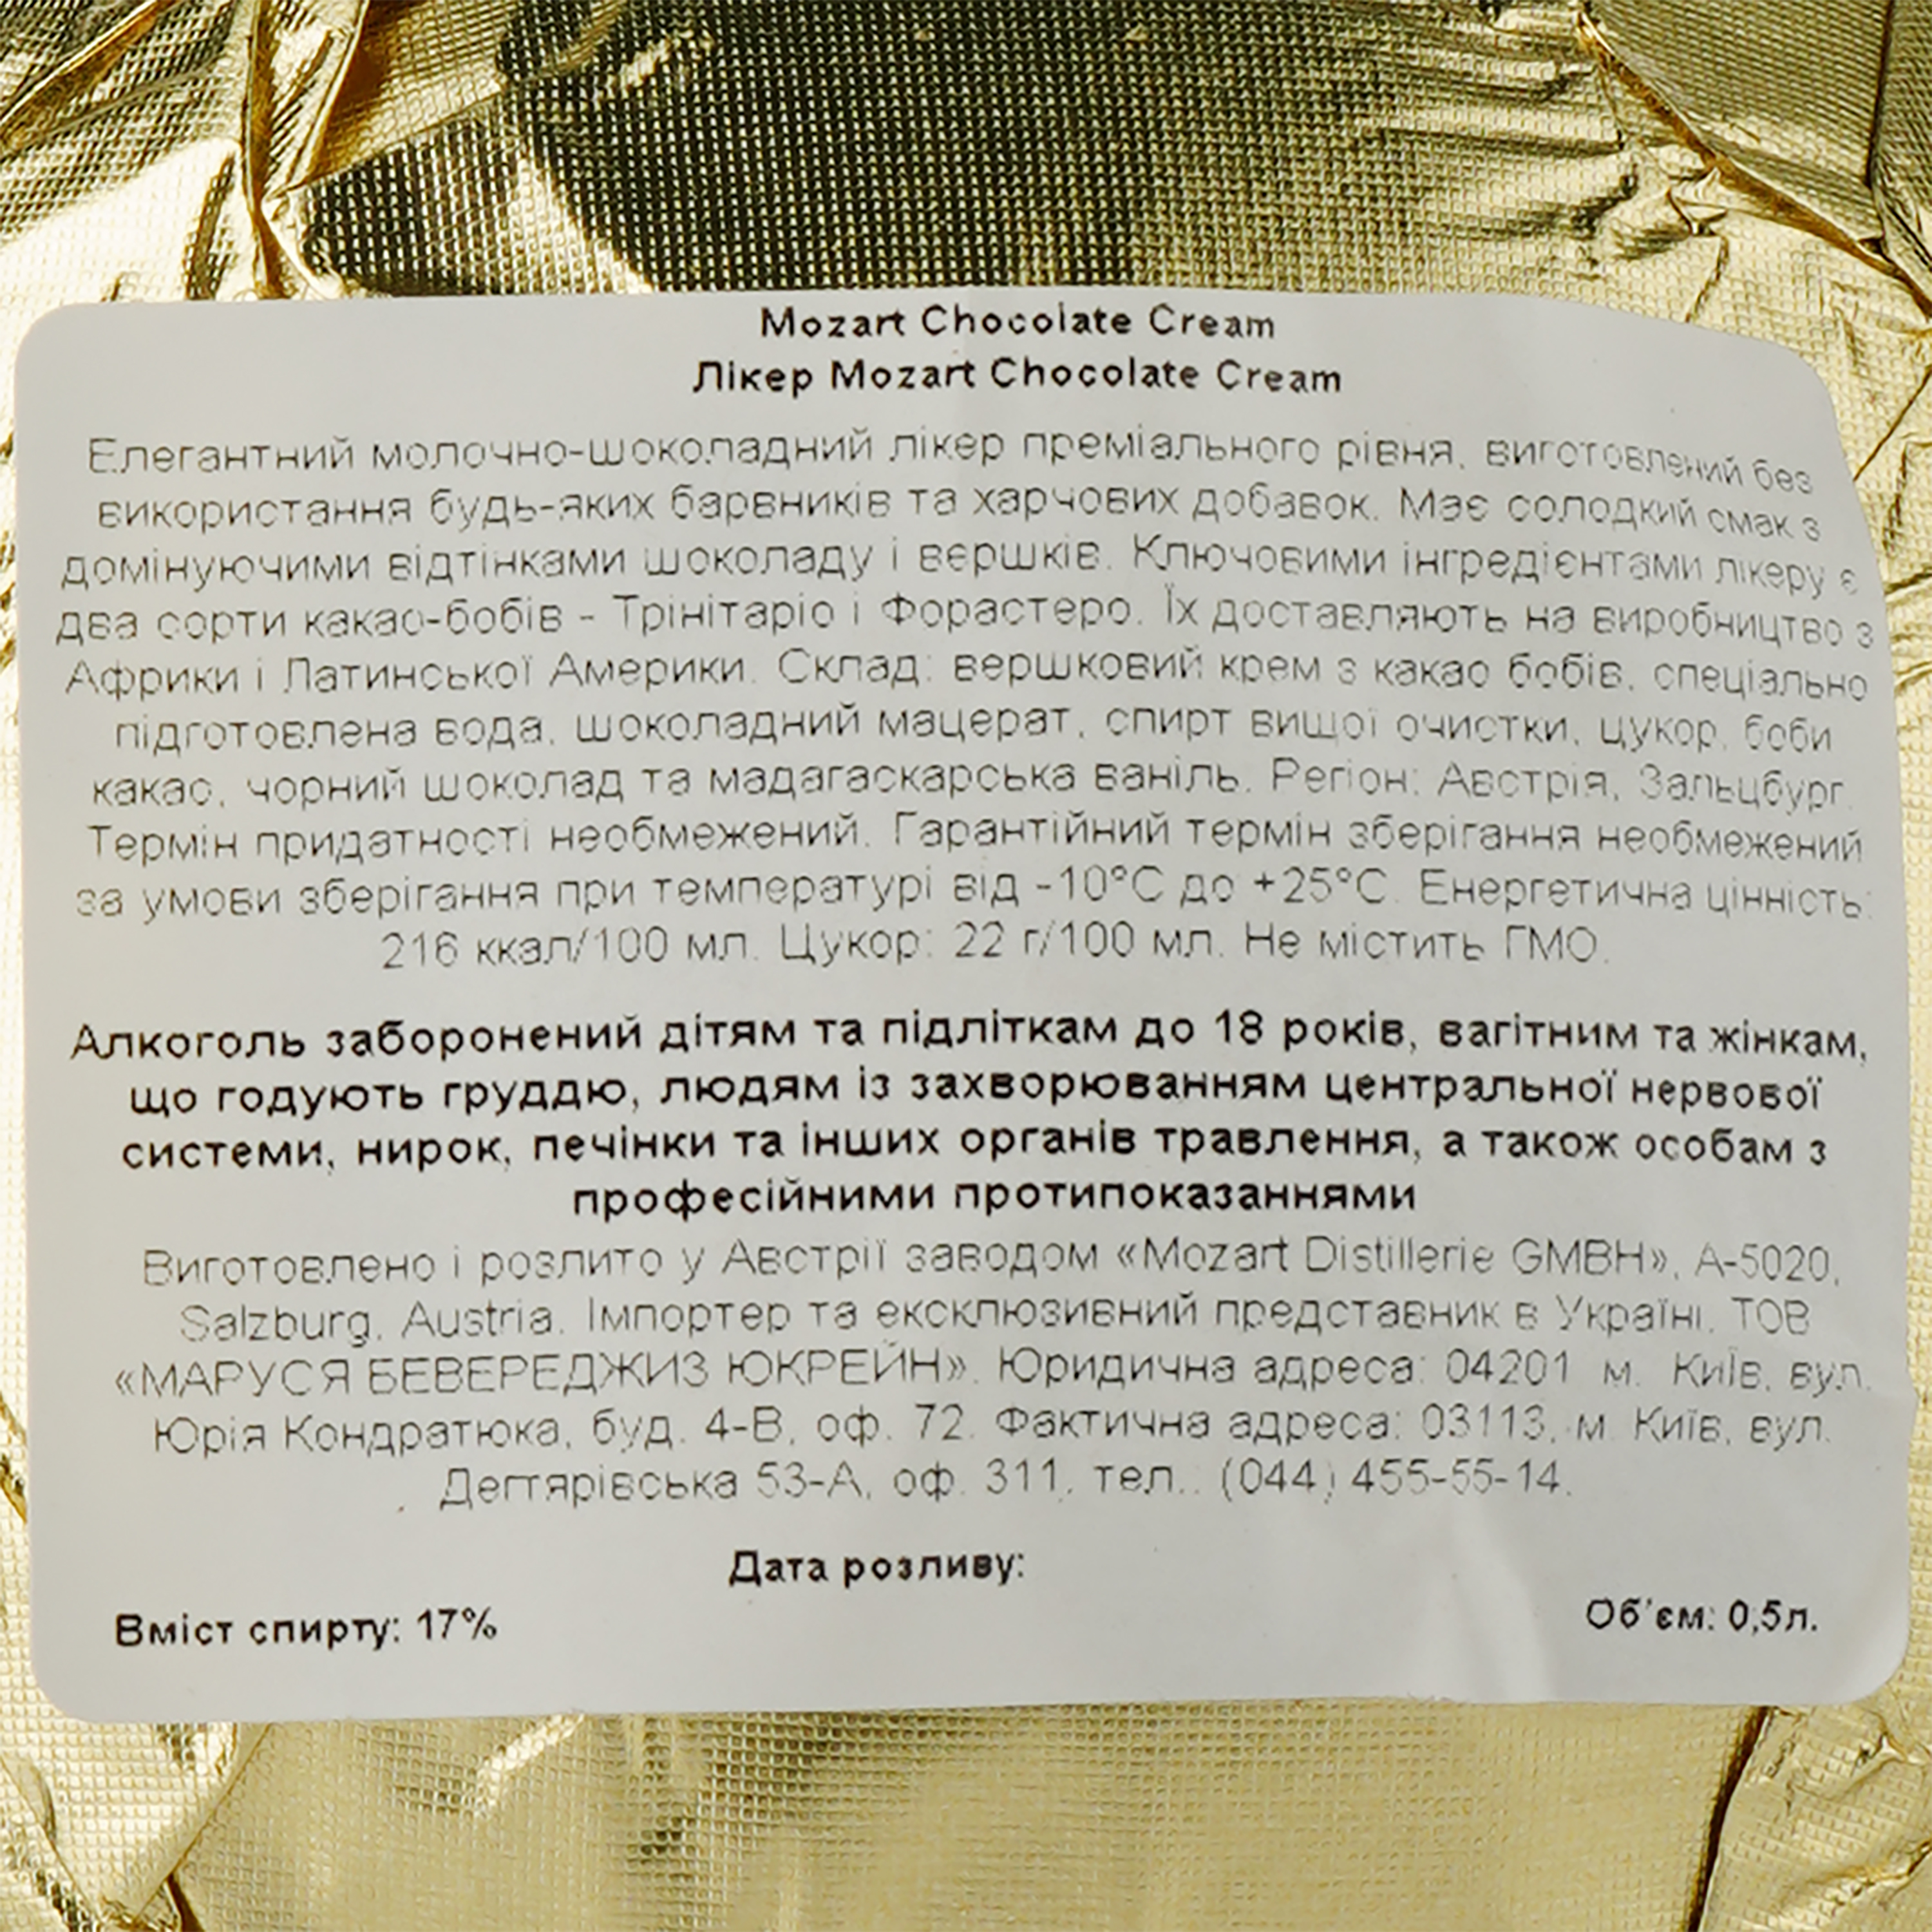 Ликер Mozart Chocolate Cream Gold, в подарочной упаковке, с бокалом, 17%, 0,5 л - фото 5